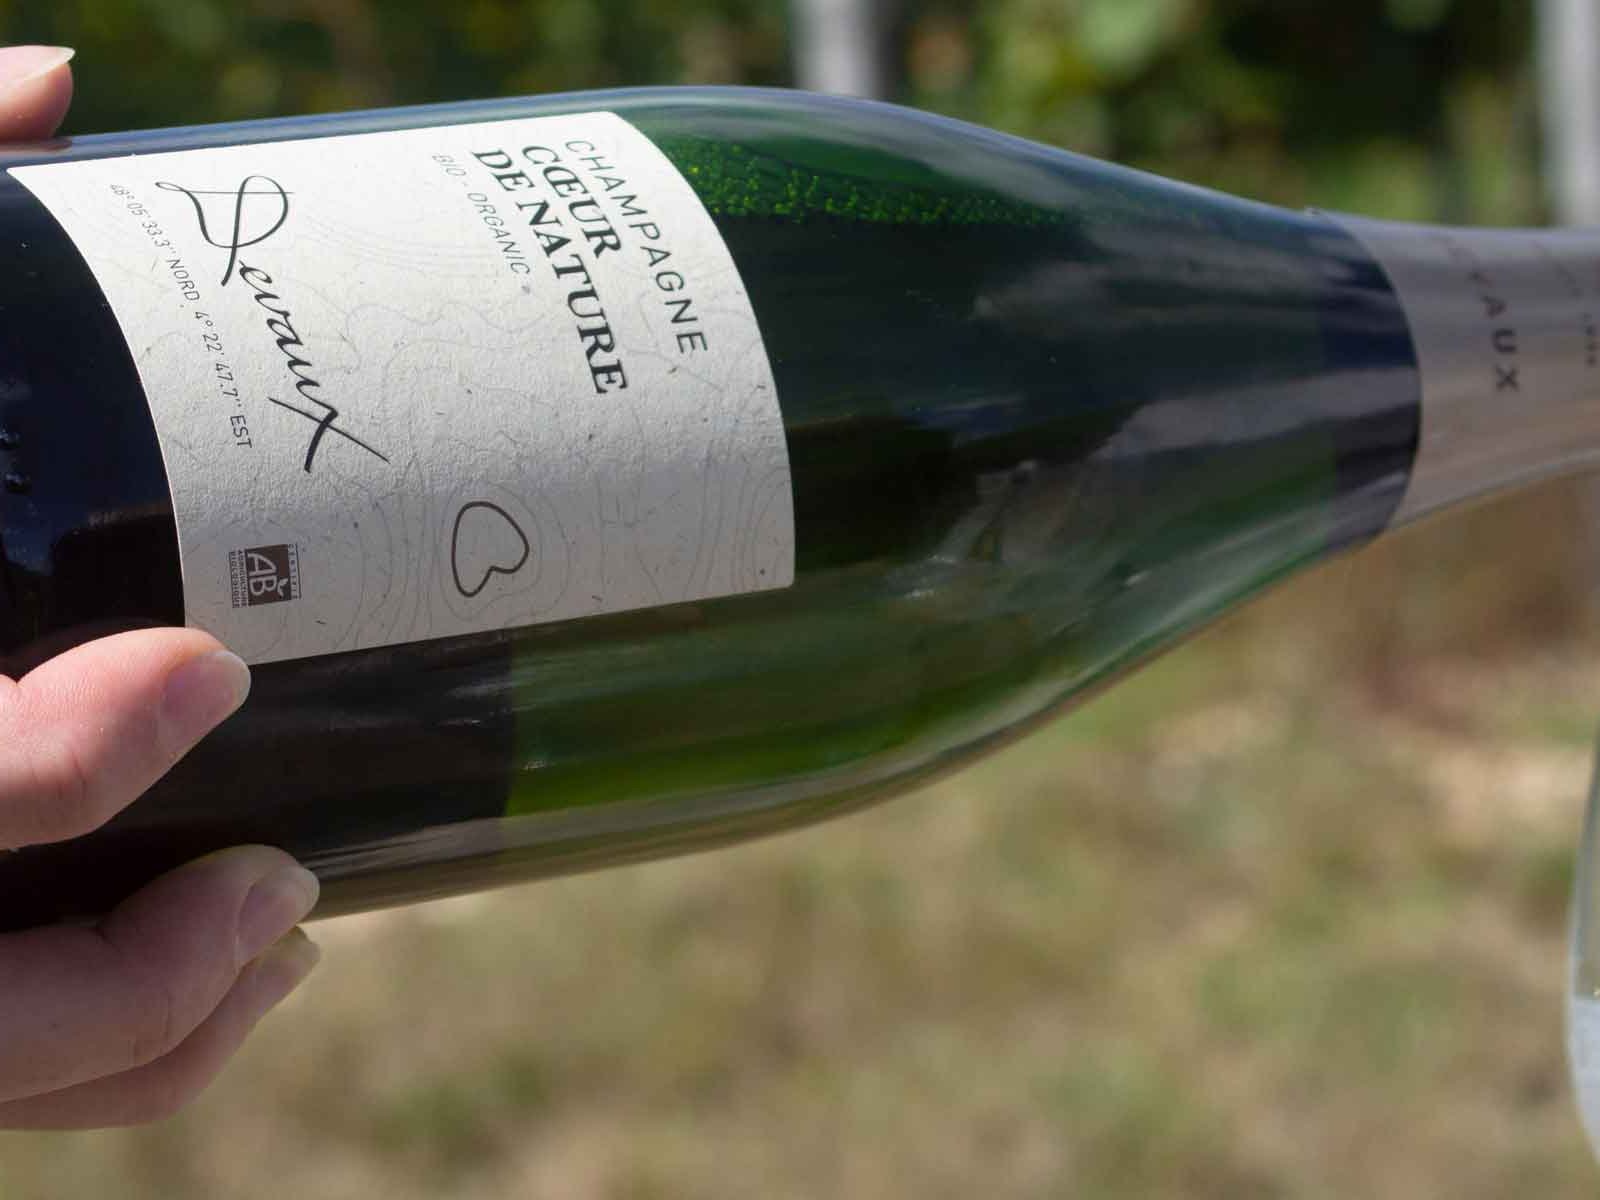 Champagne Devaux' new Cœur de Nature